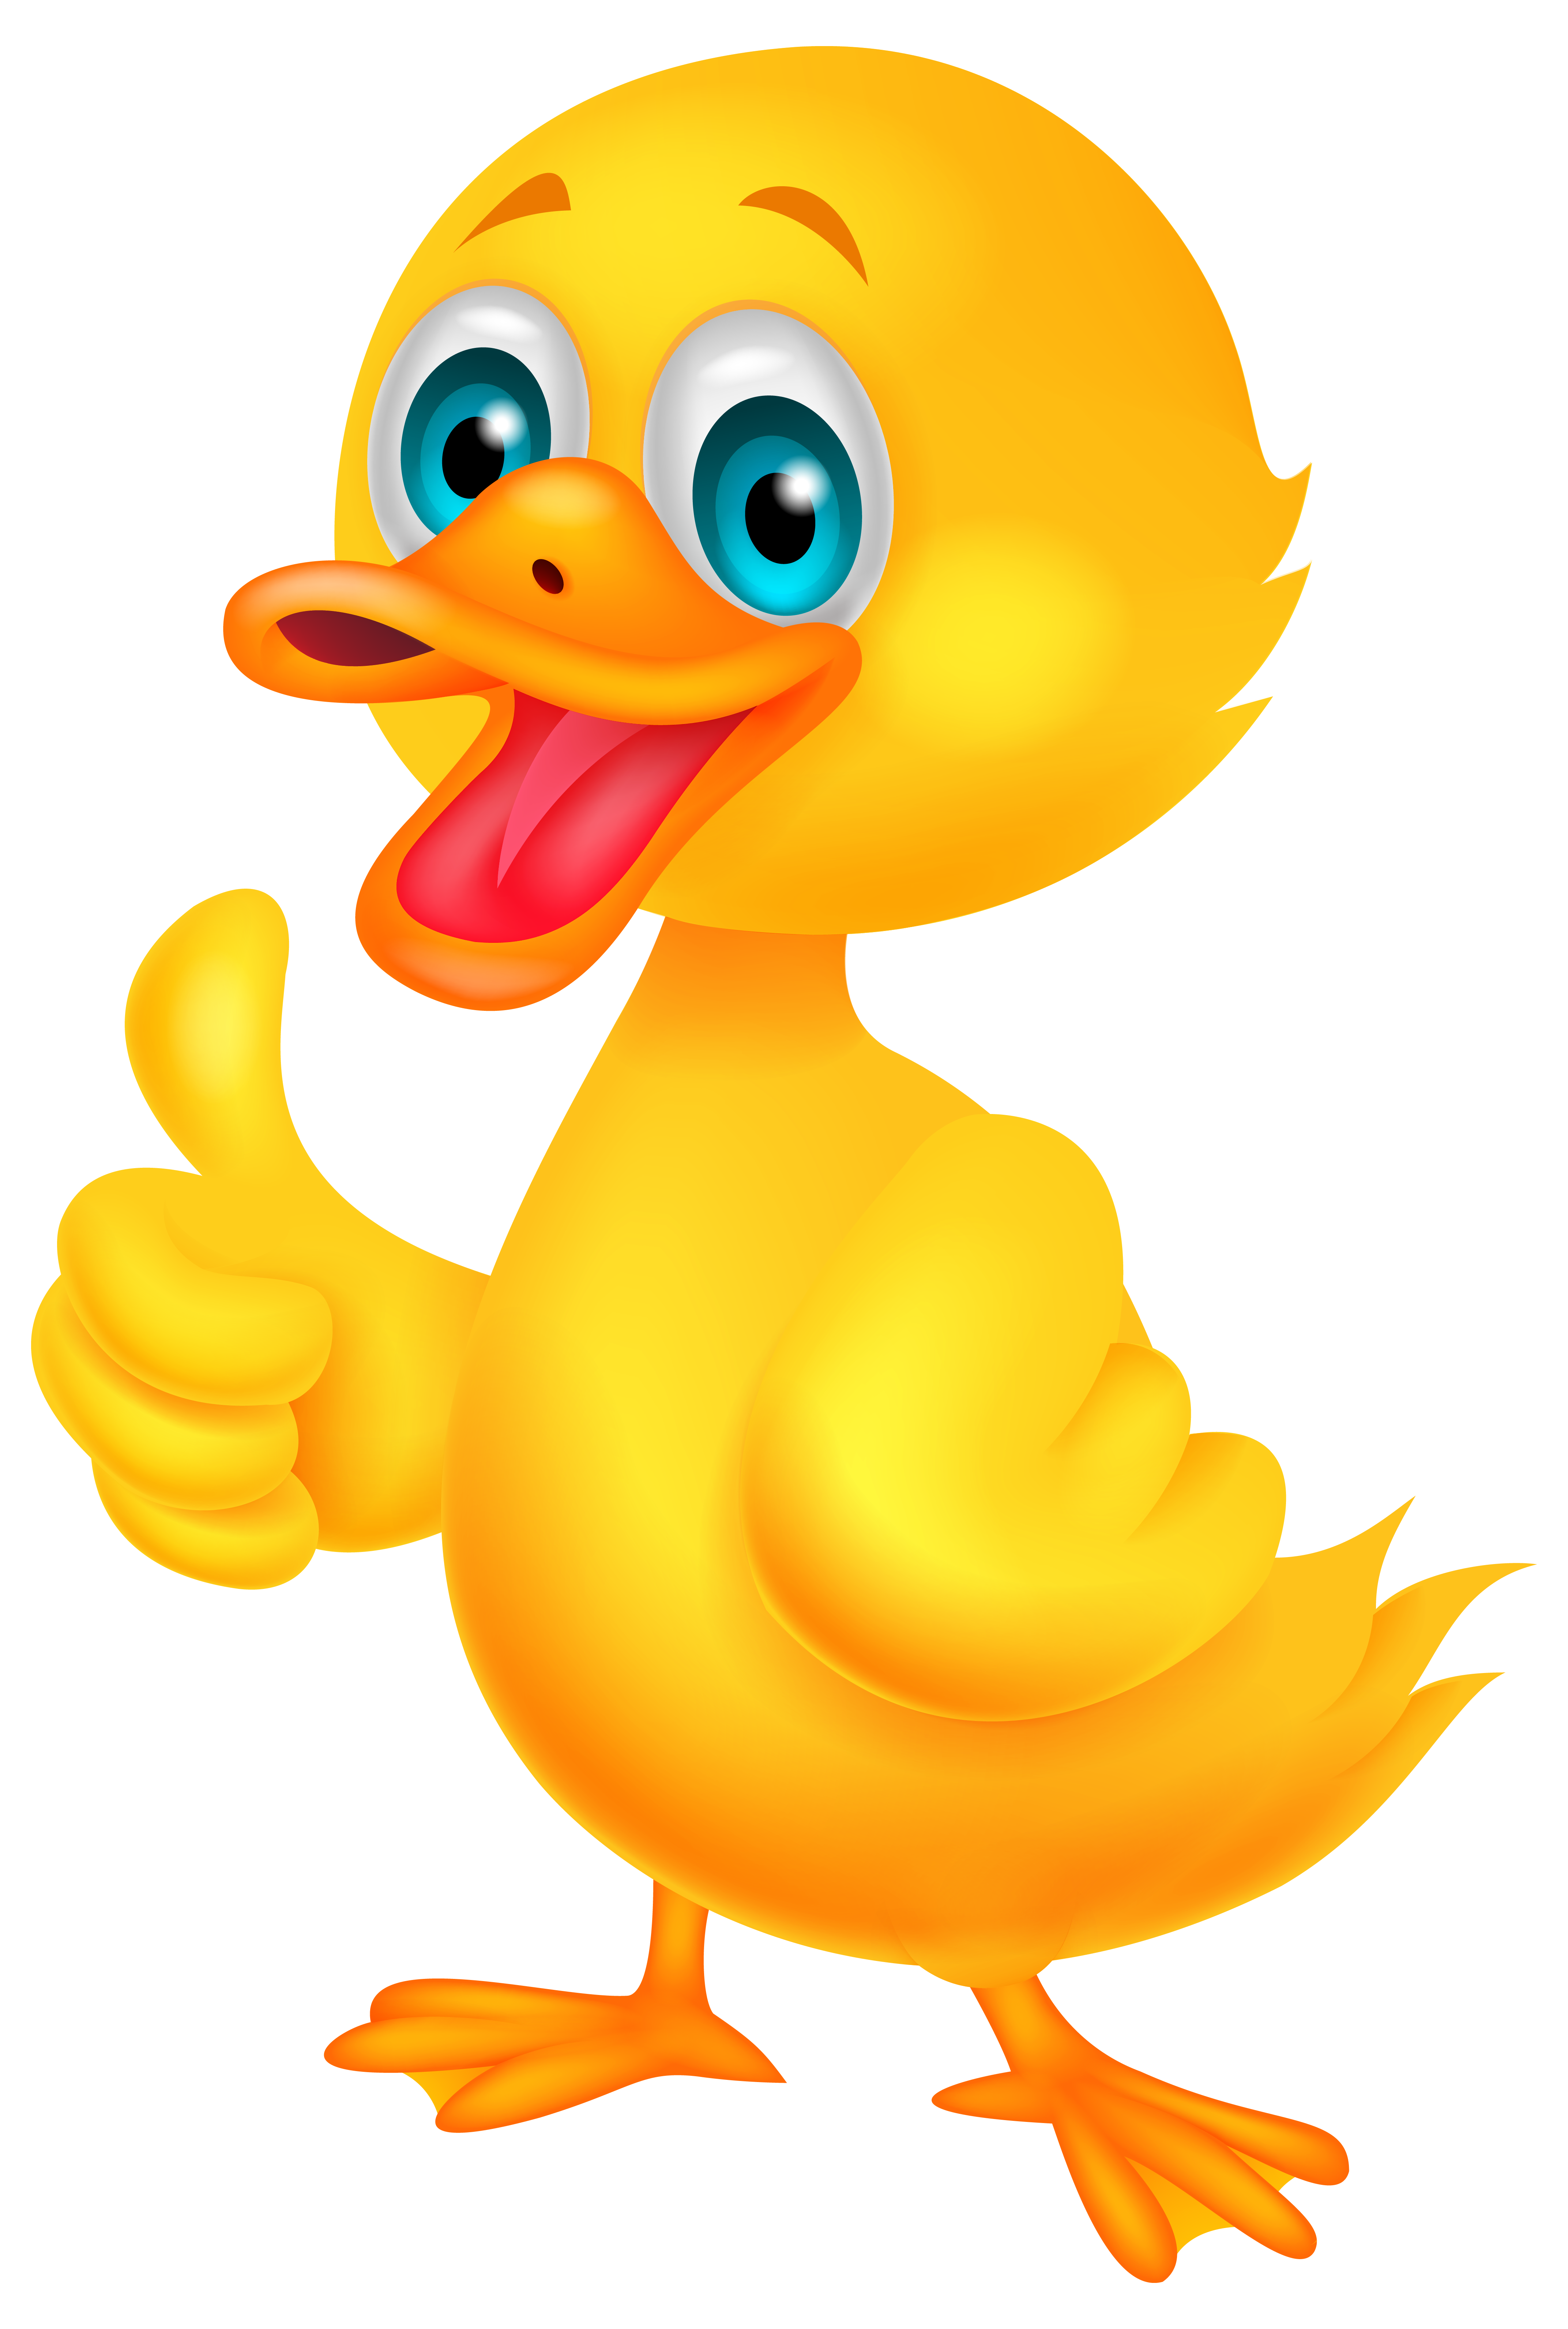 Dust clipart vector. Cartoon duck toy animal